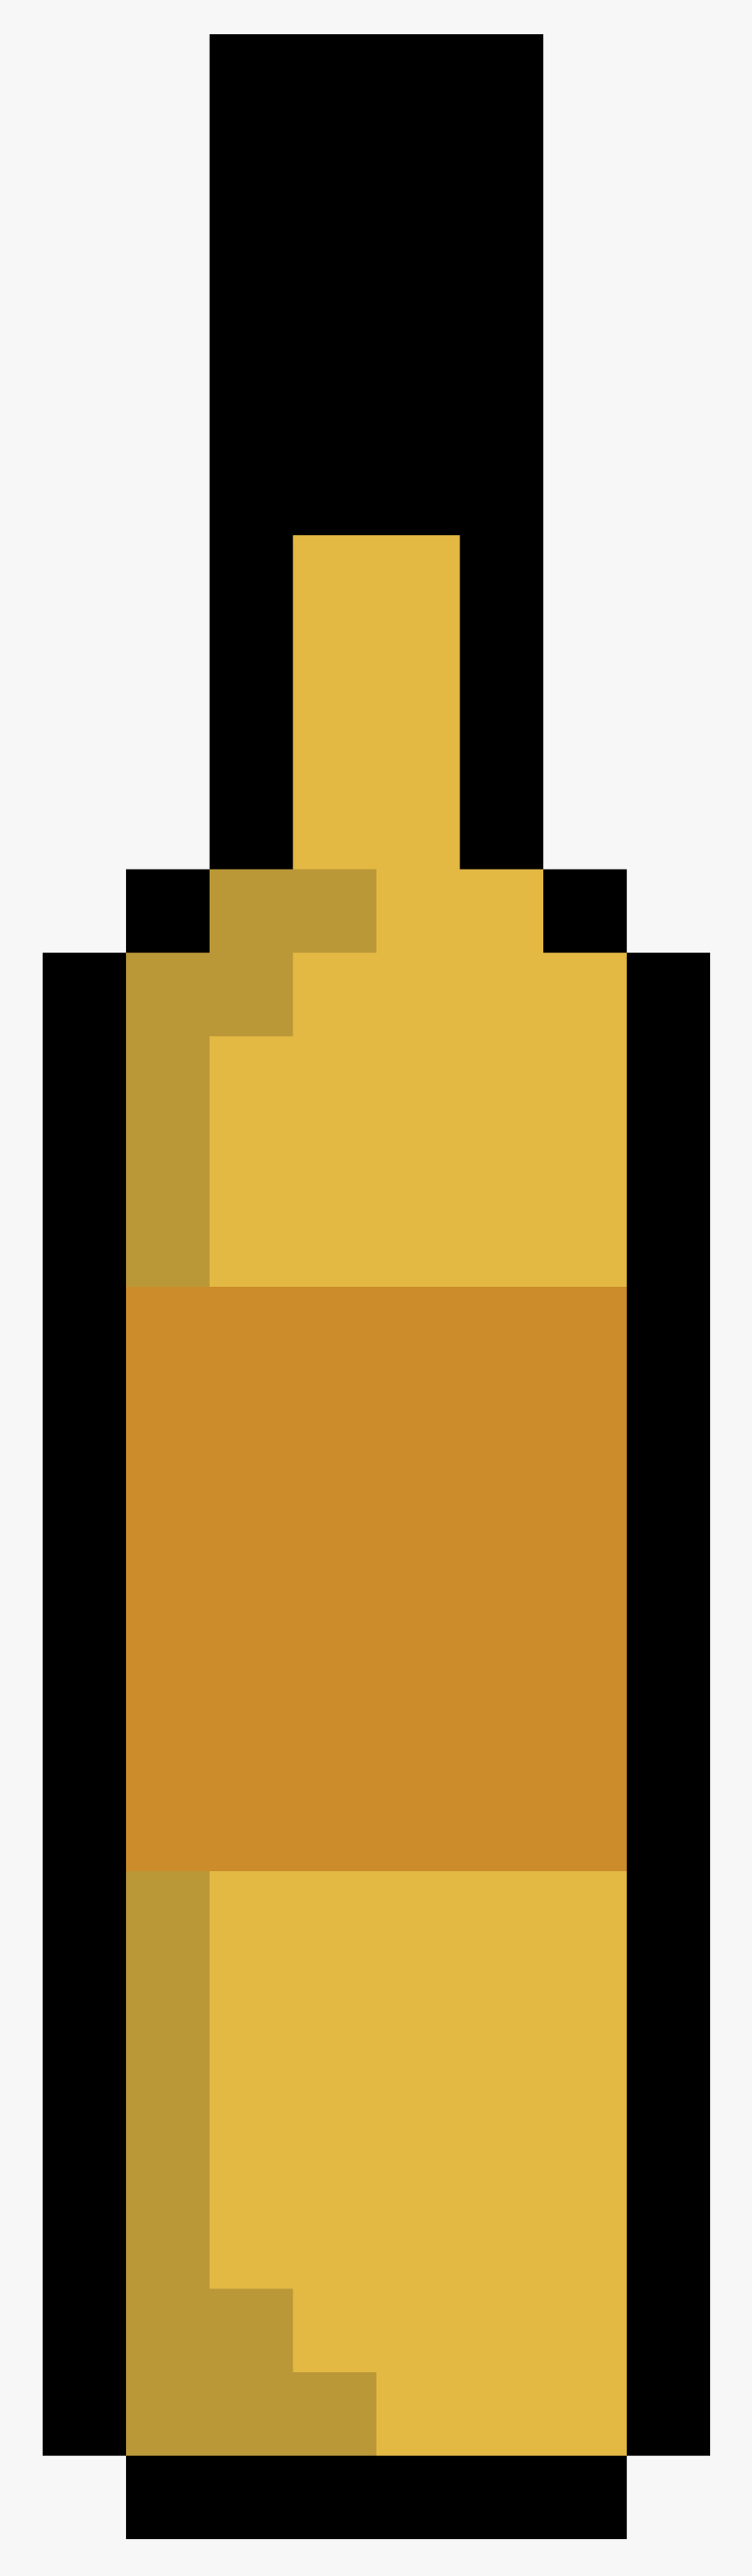 Bottle Pixel Icon, Transparent Clipart